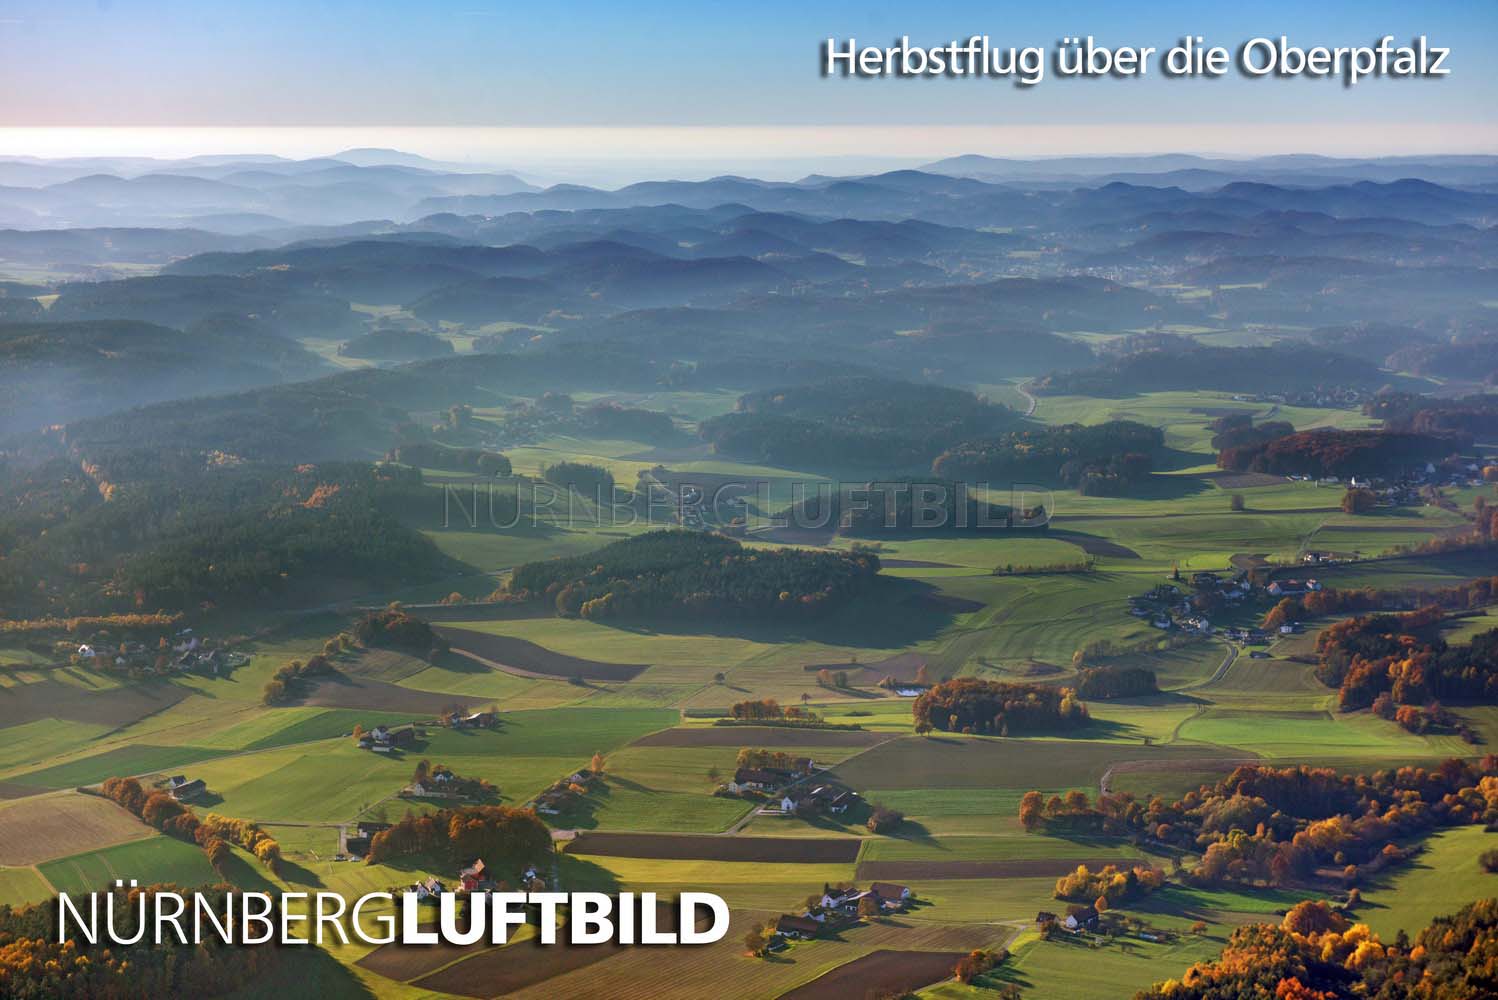 Herbstflug über die Oberpfalz, Luftaufnahme